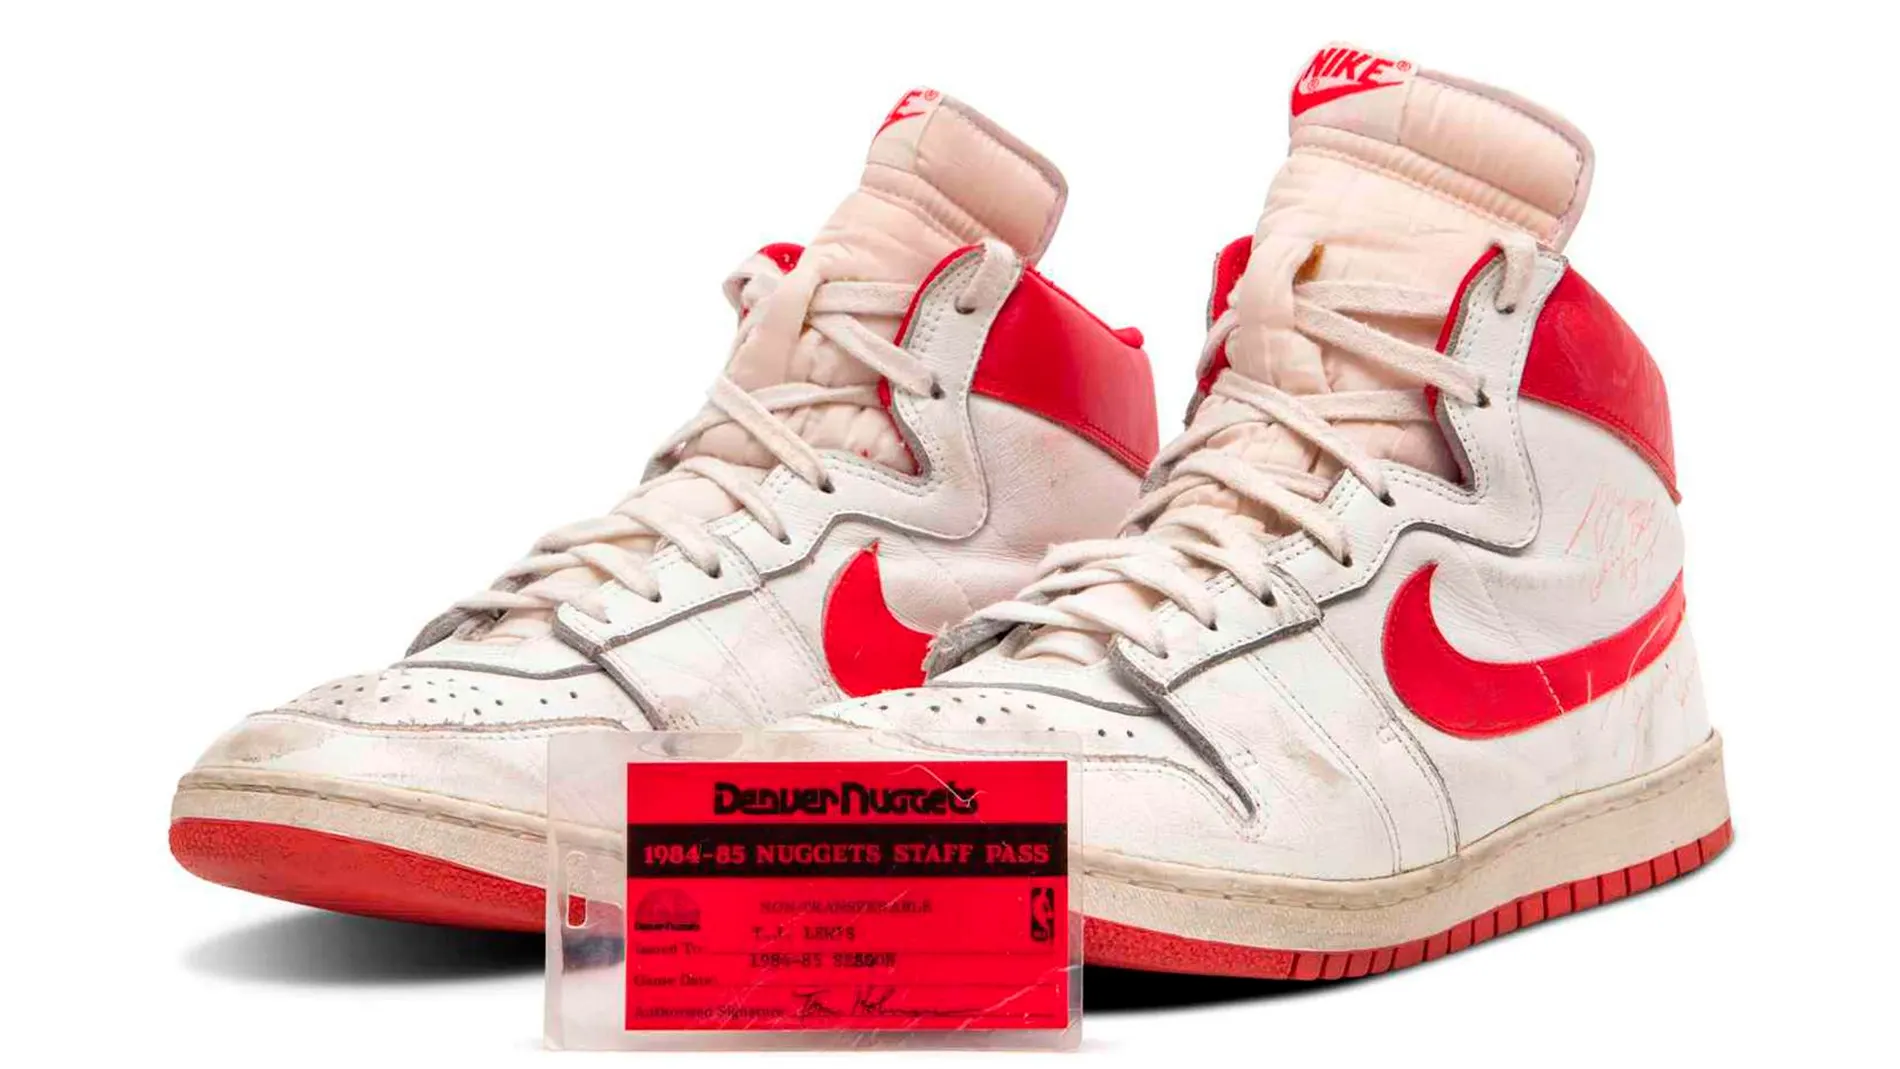 Desarmado Específico Peligro Se subastan las zapatillas que Michael Jordan usó en su primera temporada  en la NBA por 1,5 millones de dólares